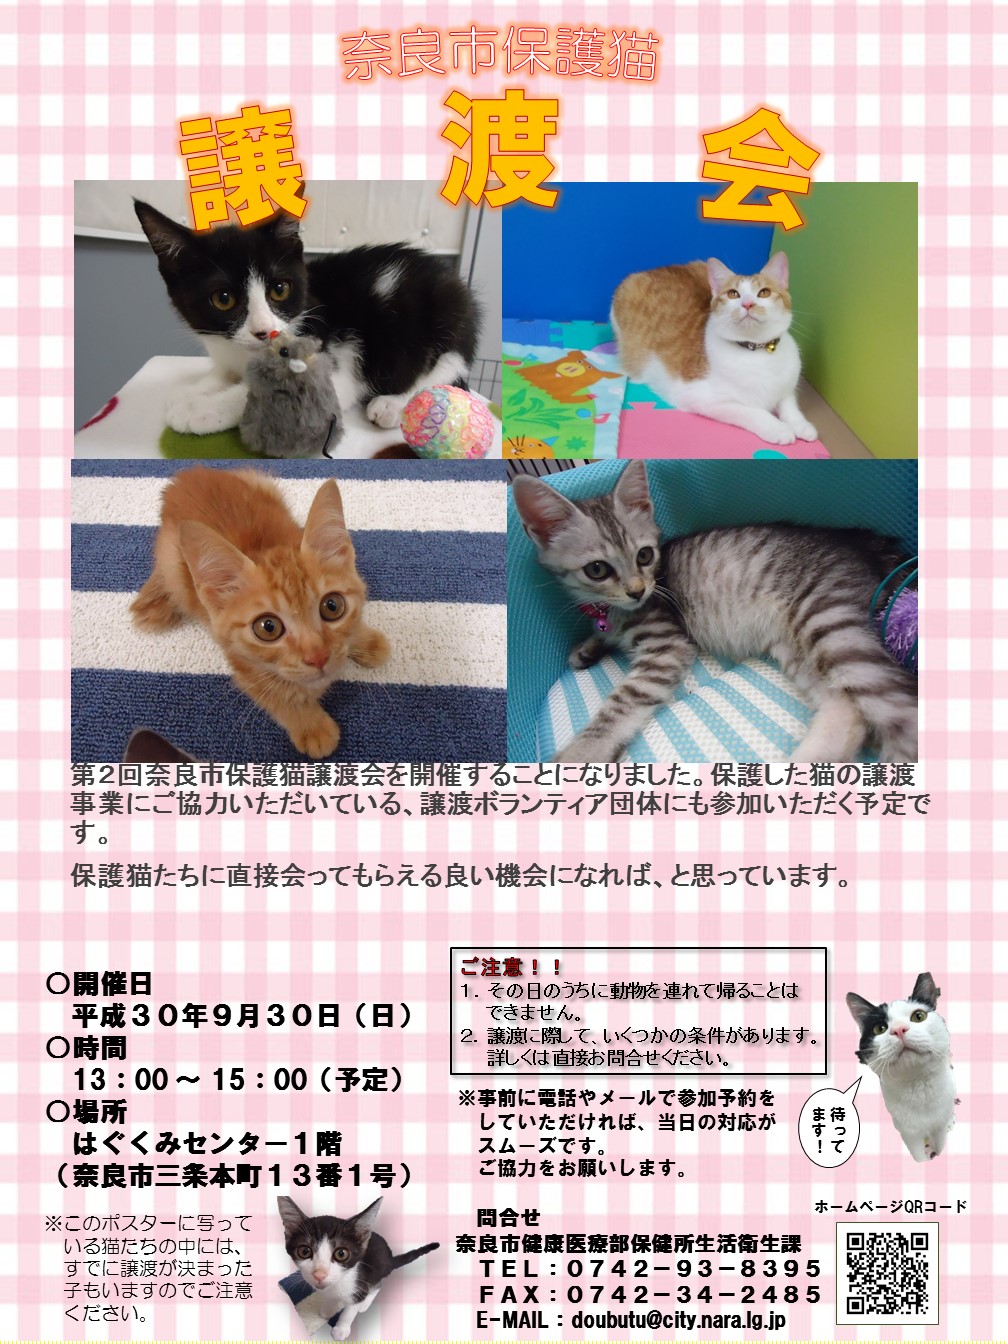 第2回奈良市保護猫譲渡会の開催について(平成30年9月6日発表)の画像